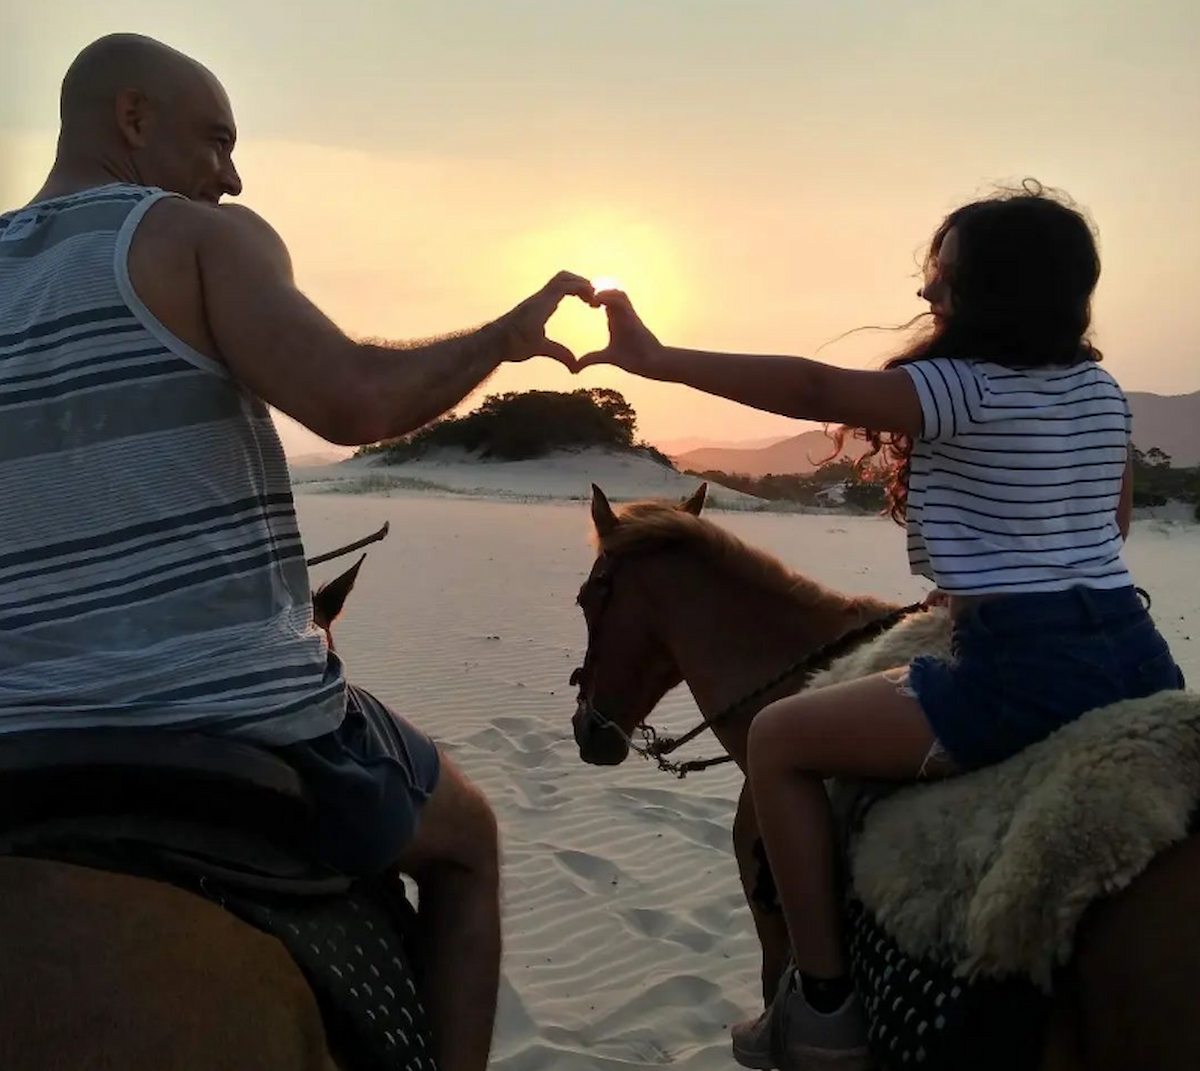 Passeio a cavalo: um jeito diferente de explorar a Praia do Rosa –  Hospedaria das Brisas